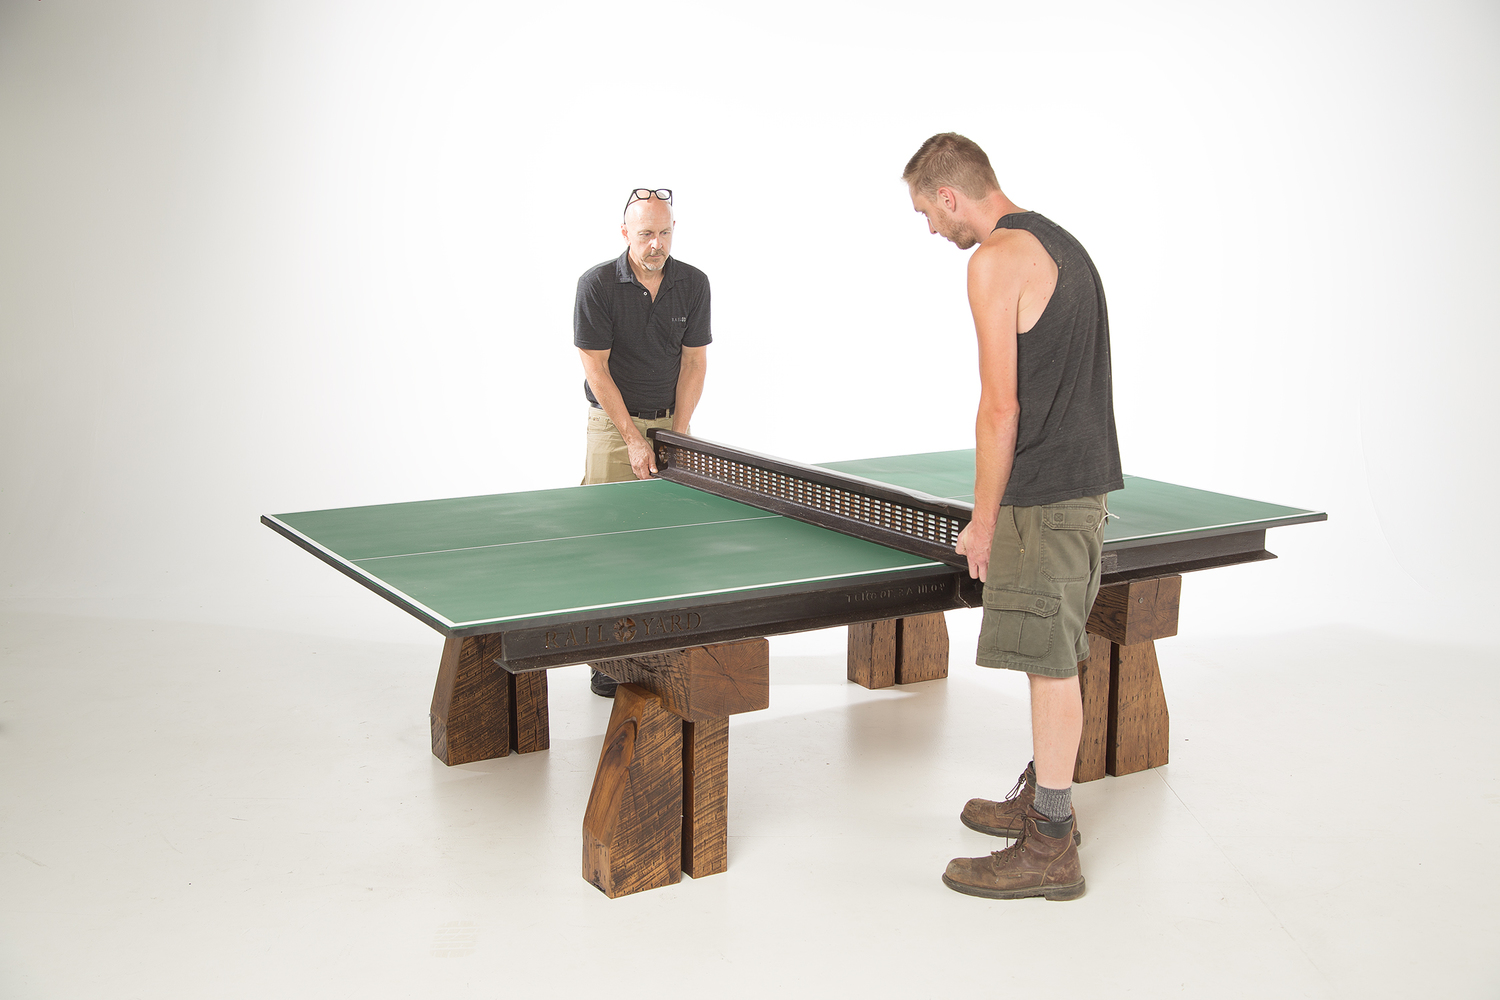 Ping Pong Table Assembly at Rail Yard Studios